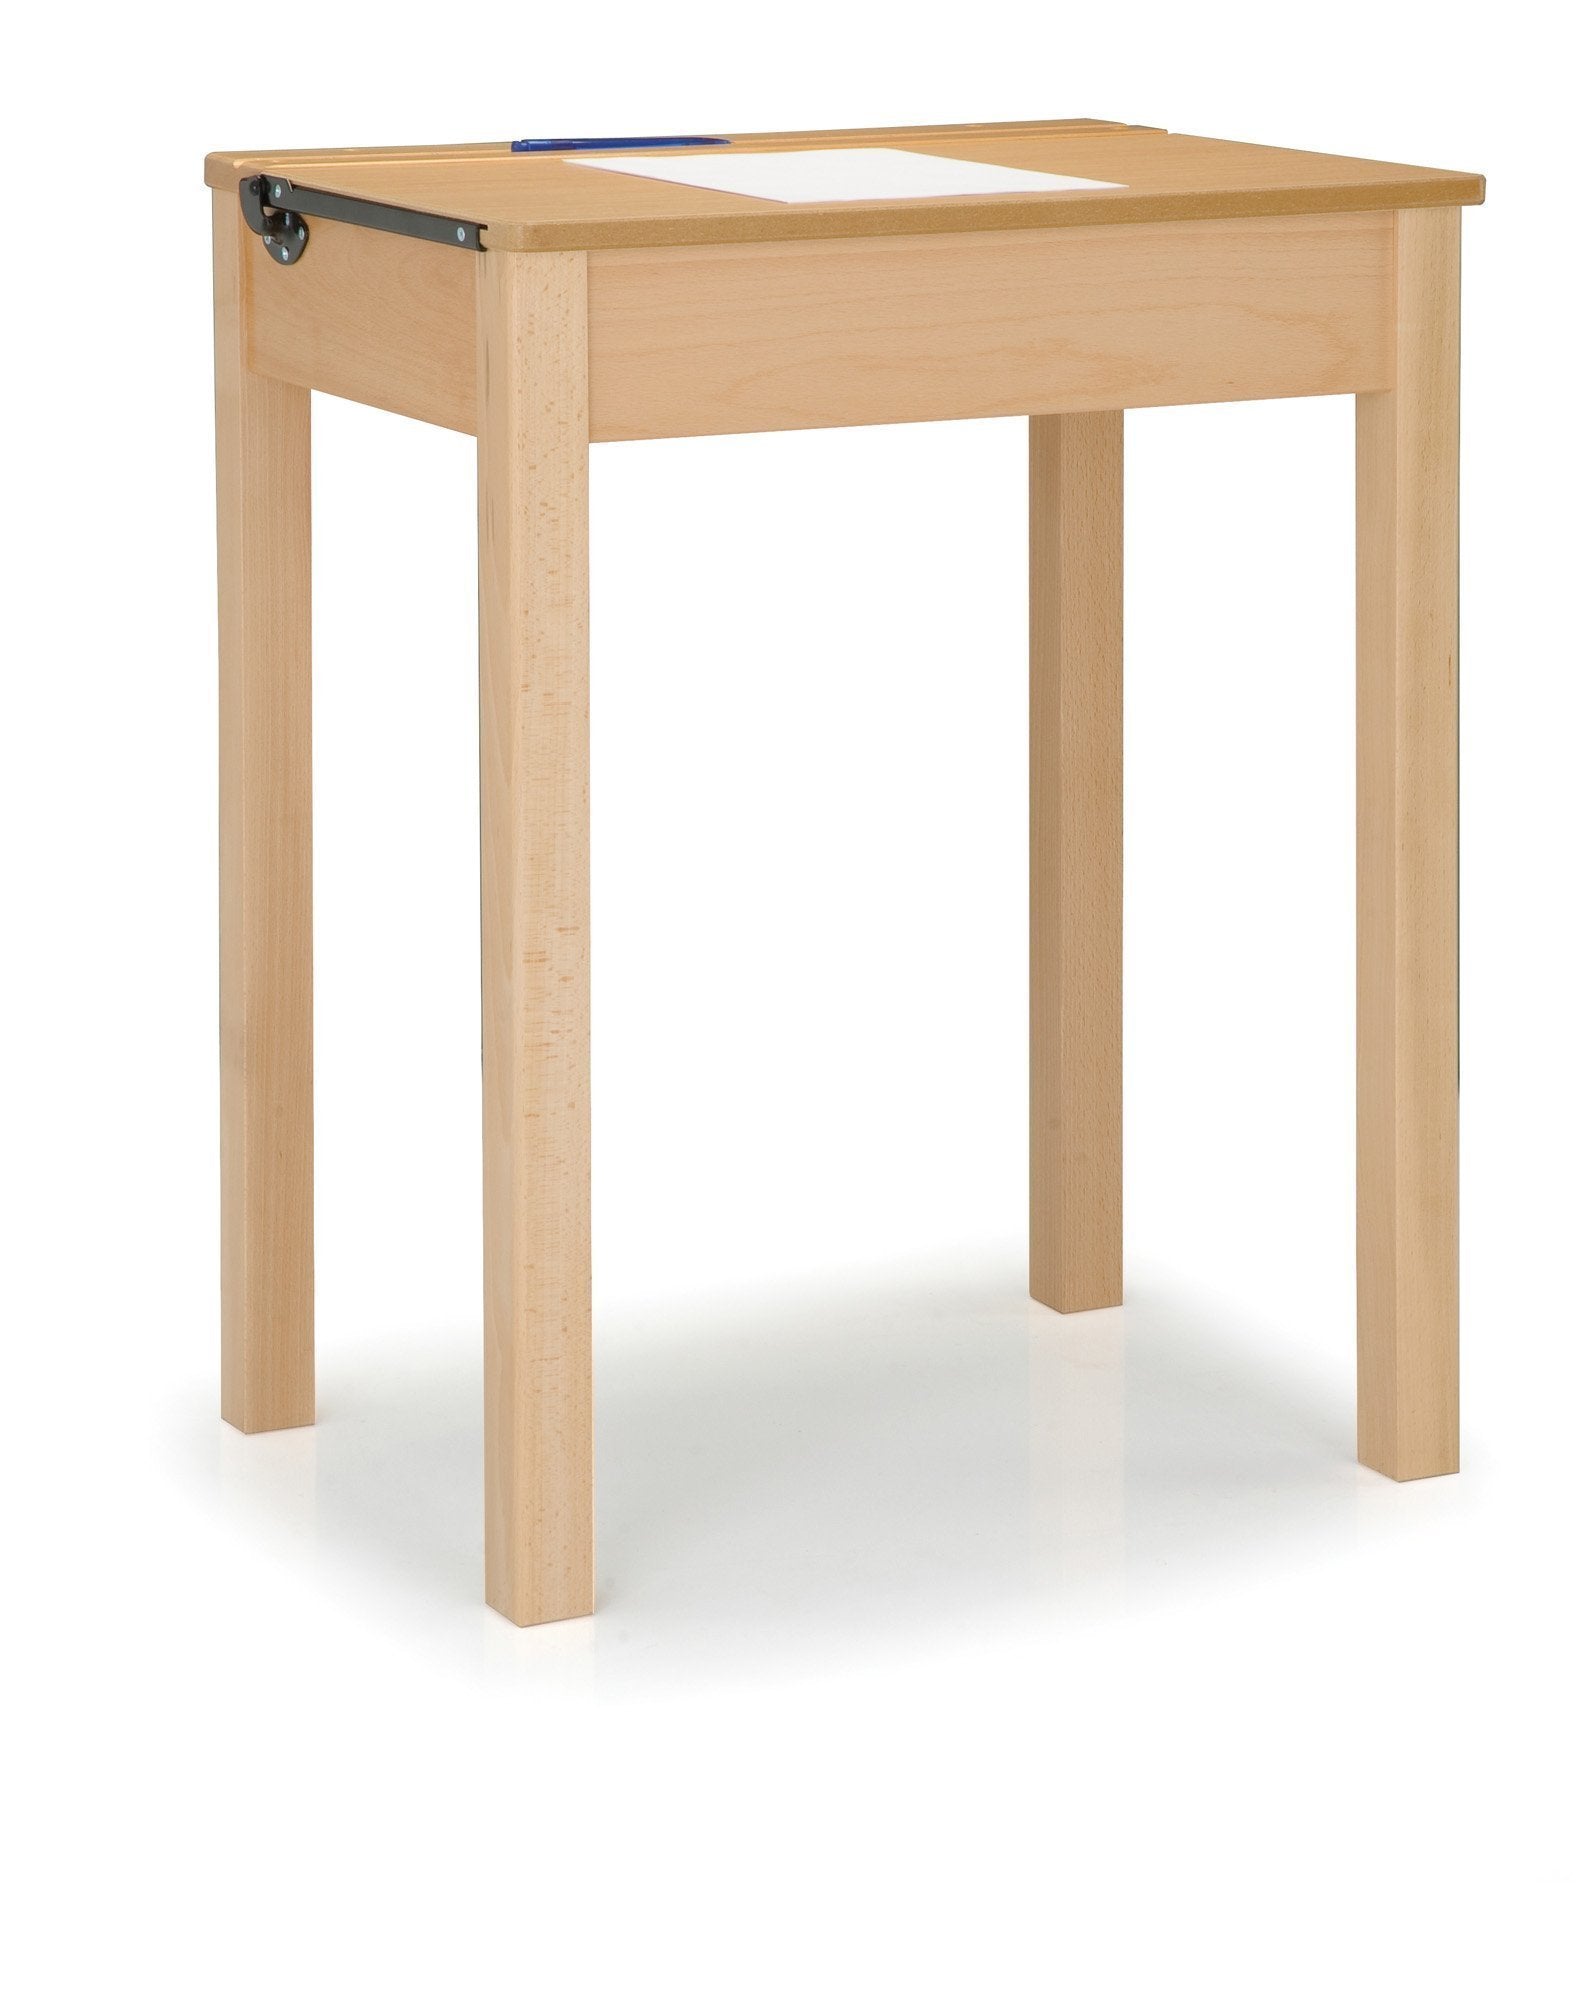 wooden locker desks w600 x d456 x h650 mm Single Wooden Locker Desks w600 x d456 x h650 mm